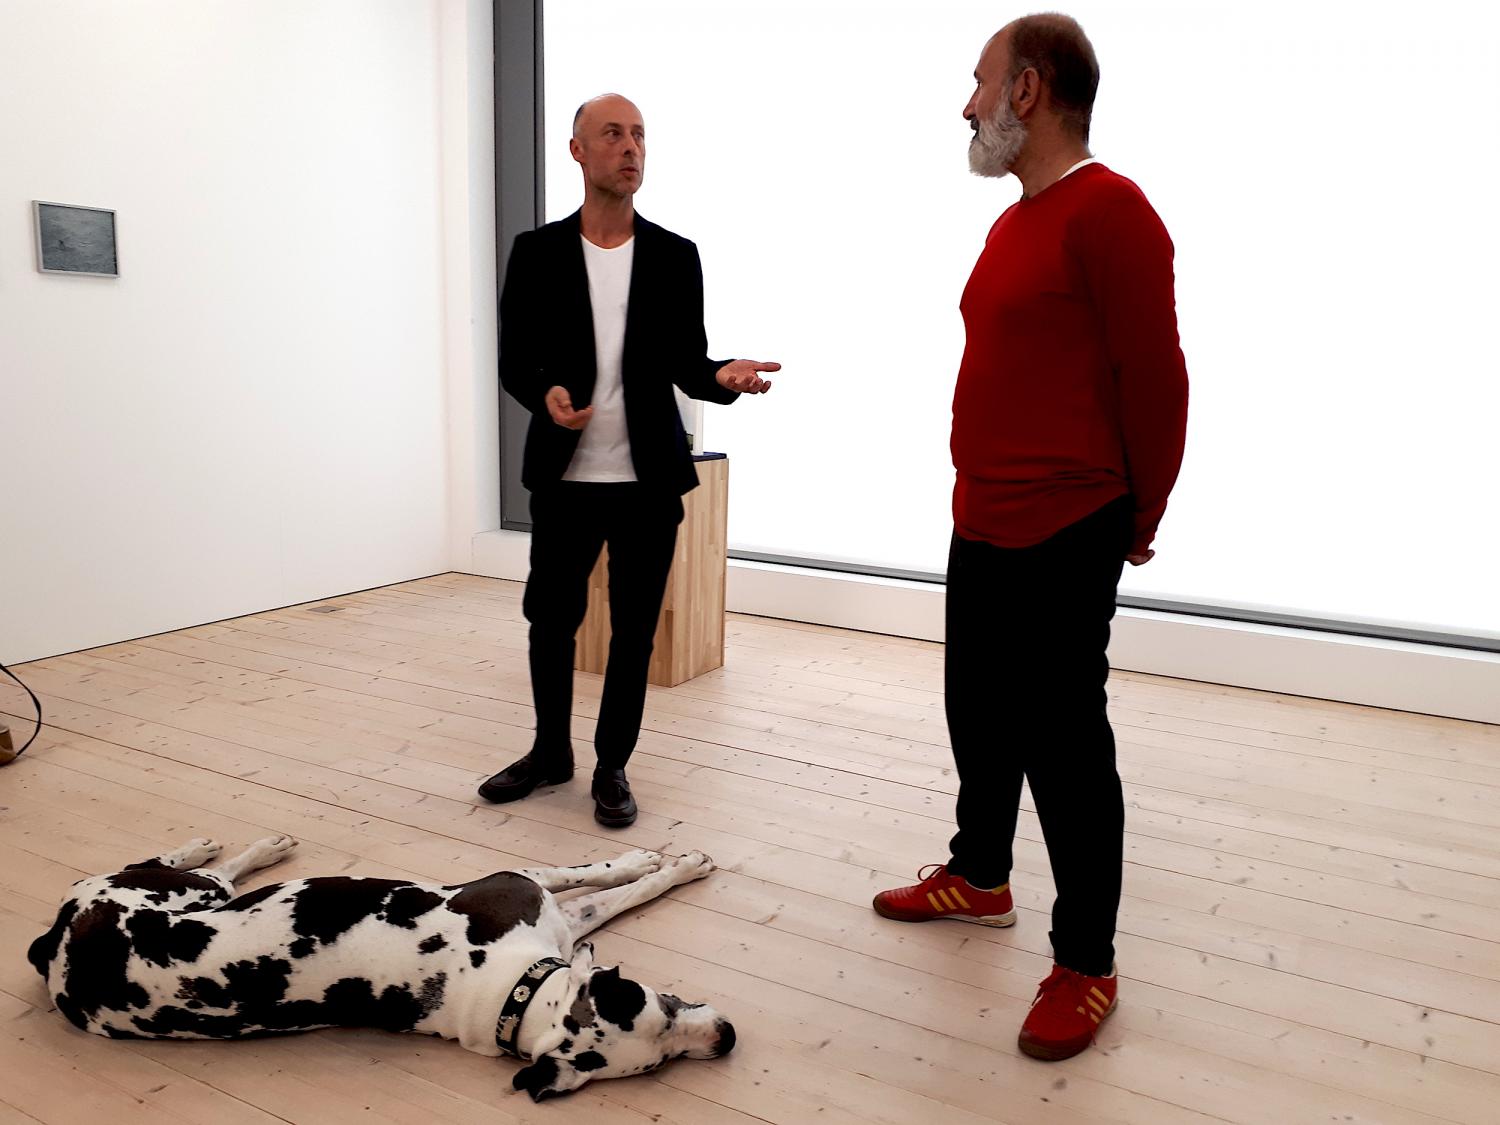 Gruppenbild mit Hund: Der Künstler Herbert Weber im Gespräch mit dem Galeristen Jordanis Theodoridis. Galeriehund Ida lässt sich davon nicht weiter stören.